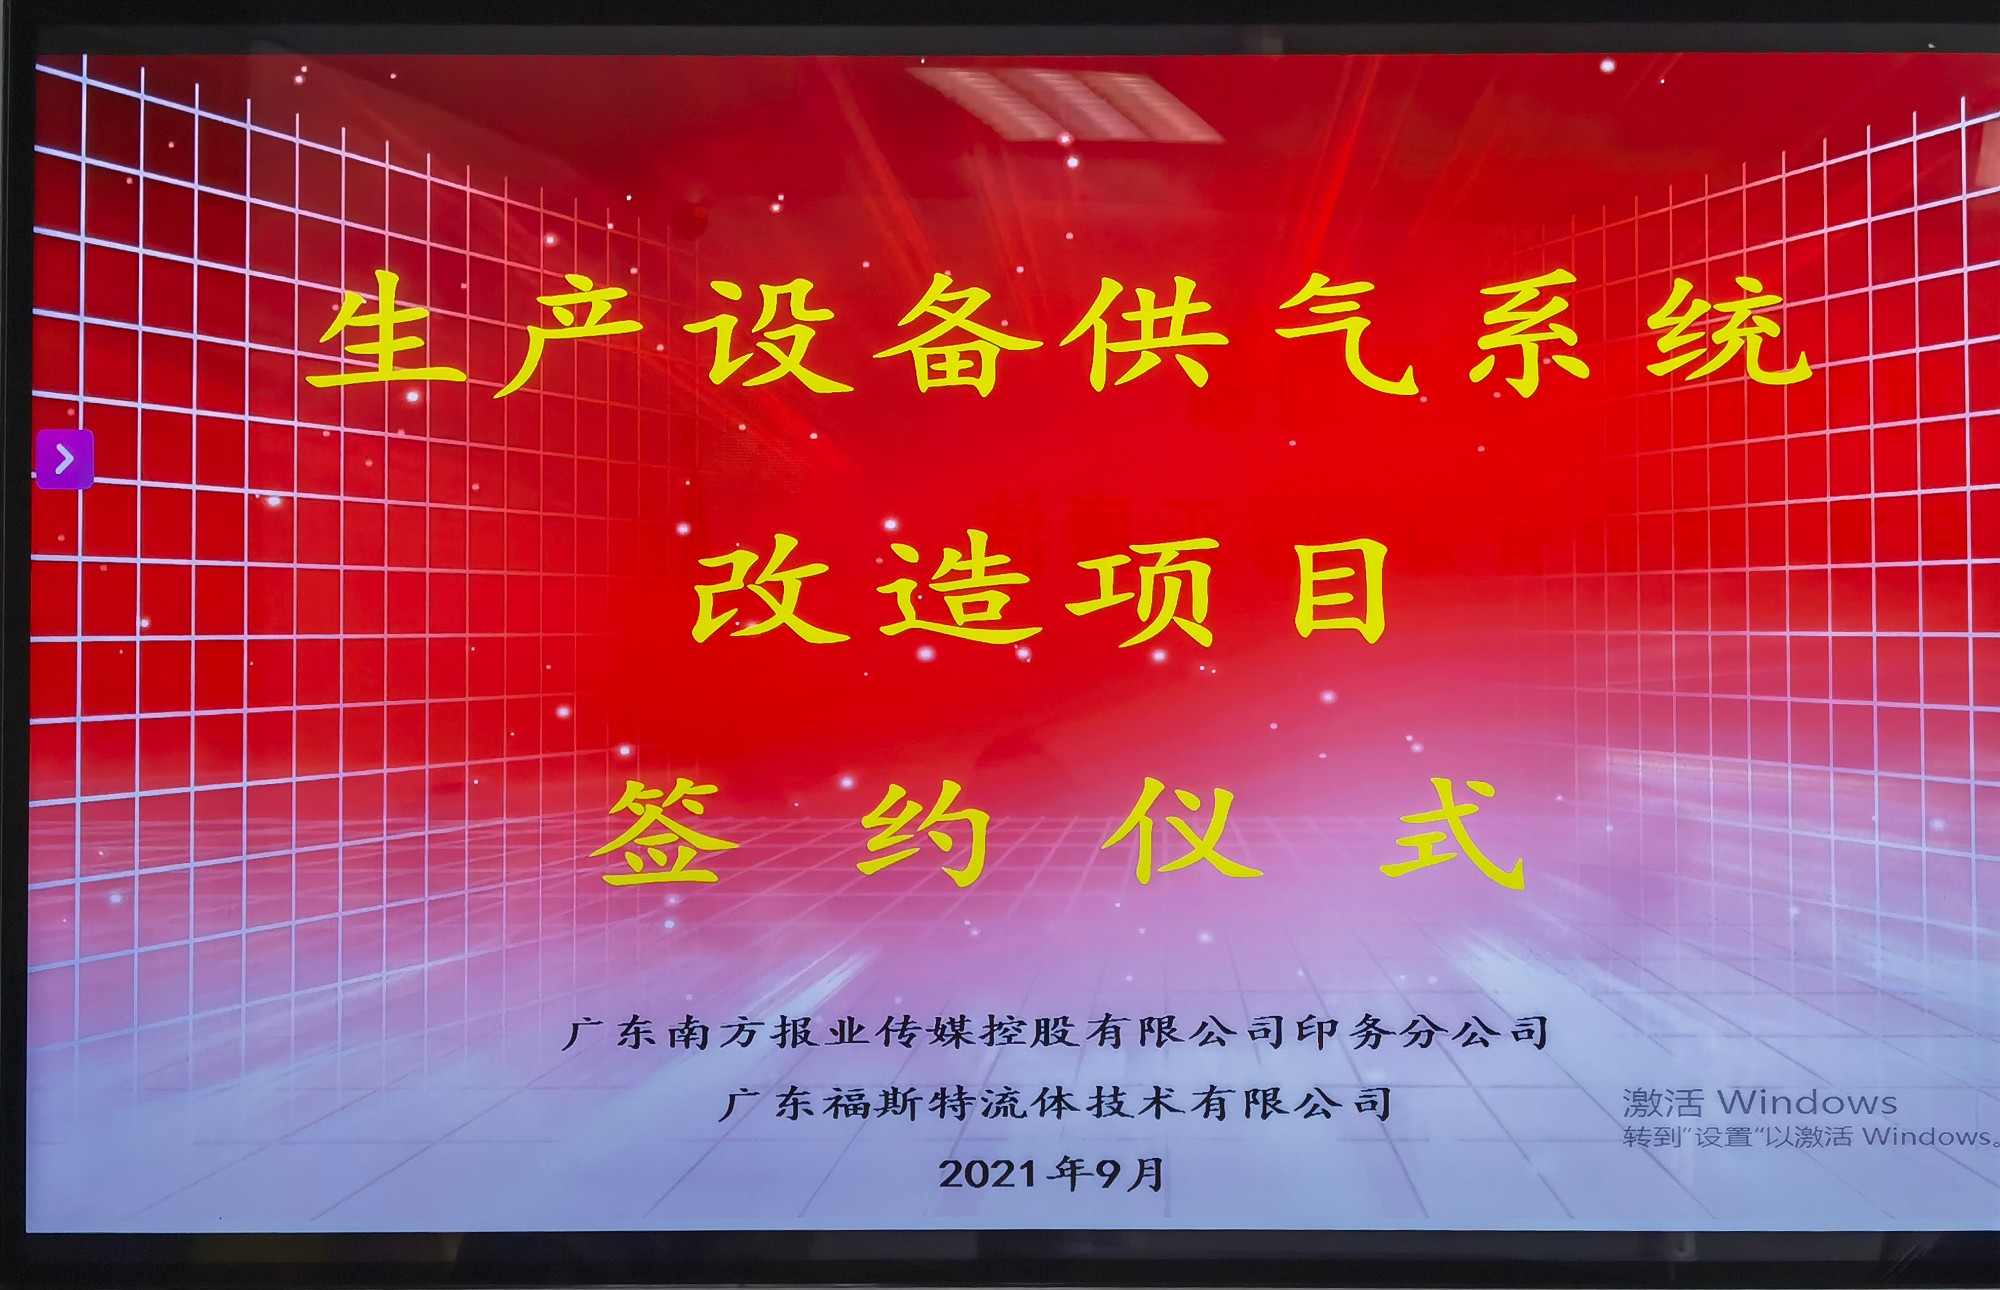 广东福斯特流体技术有限公司与广东南方报业传媒控股有限公司举行签约仪式